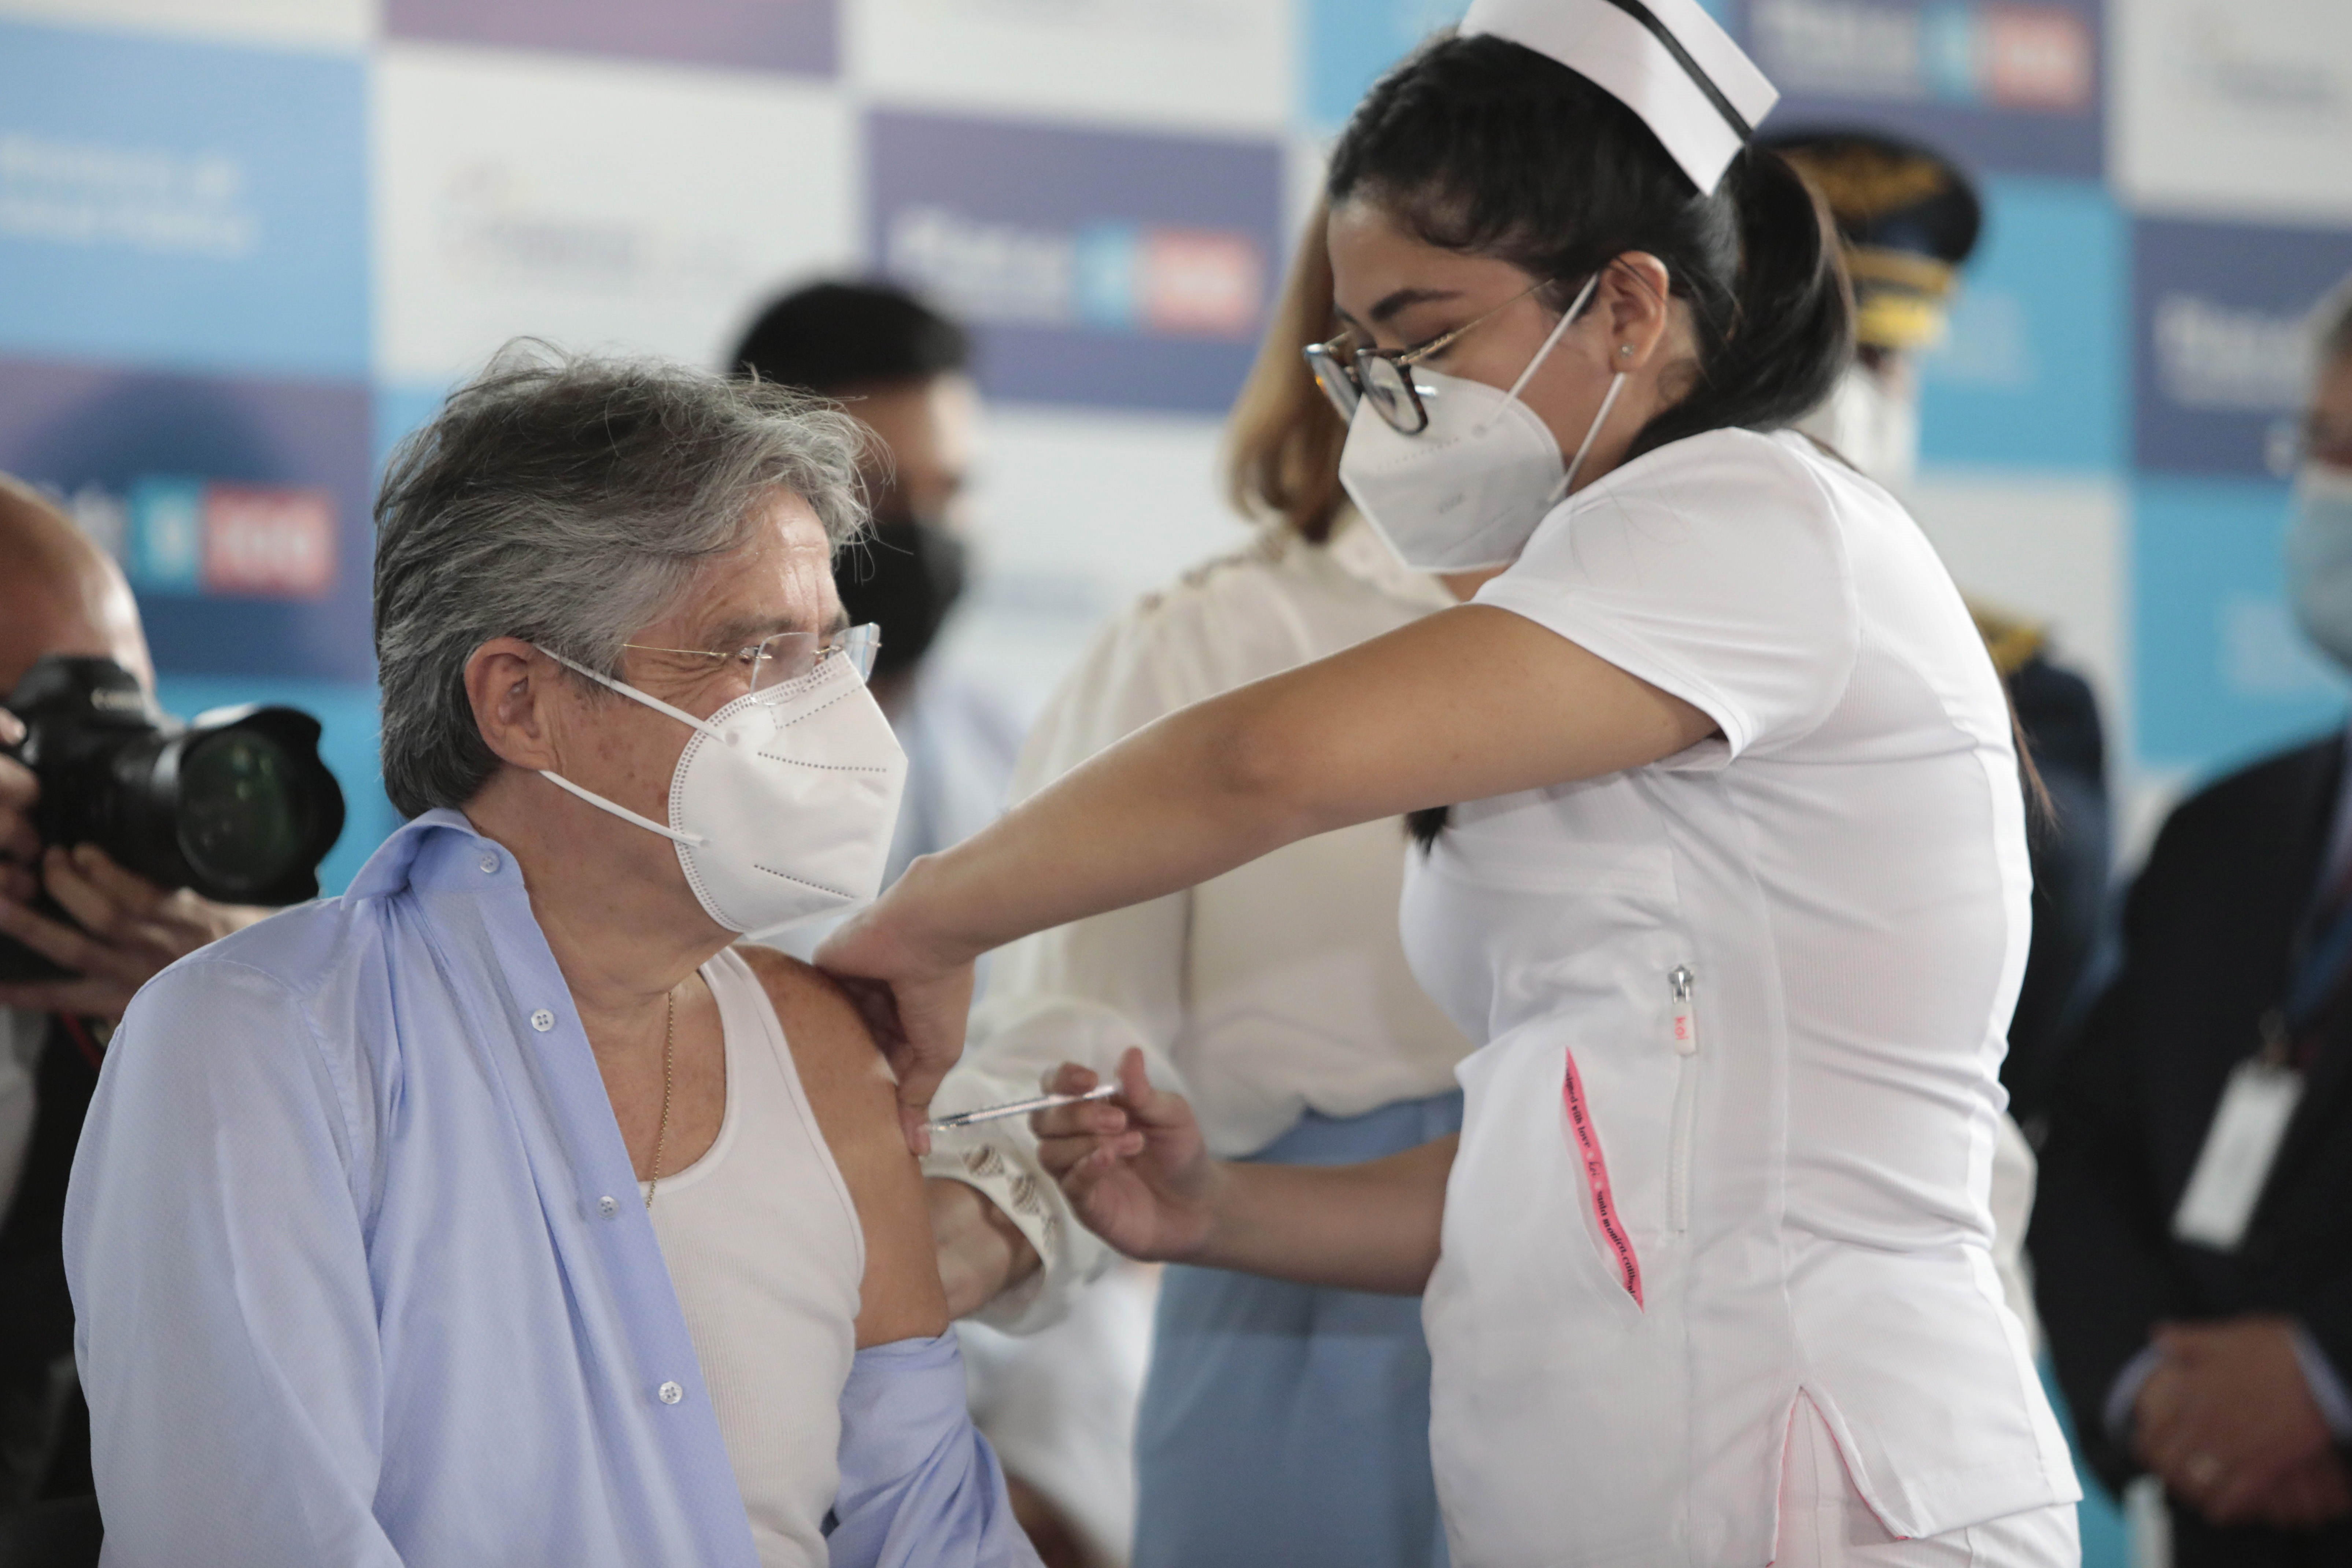 Contrario a las noticias falsas que circulaban en redes sociales, los vacunas contra el covid-19 sí pueden donar sangre, de acuerdo a la Cruz Roja estadounidense. (Foto Prensa Libre: Hemeroteca PL)